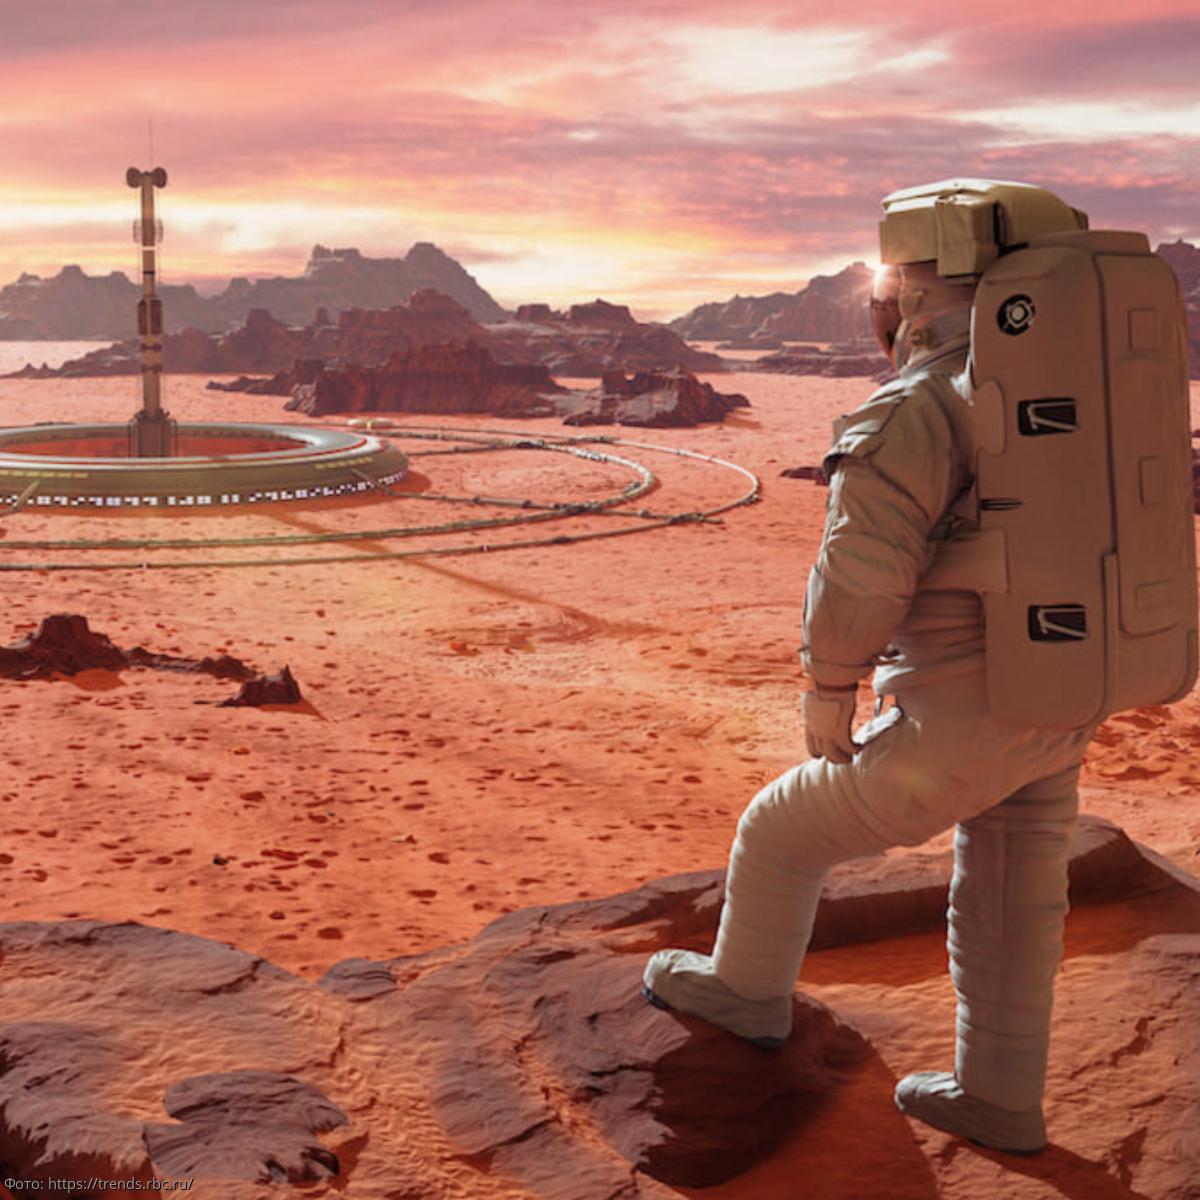 Ученые хотят производить железо на Марсе из солнечного света, воздуха и местных пород